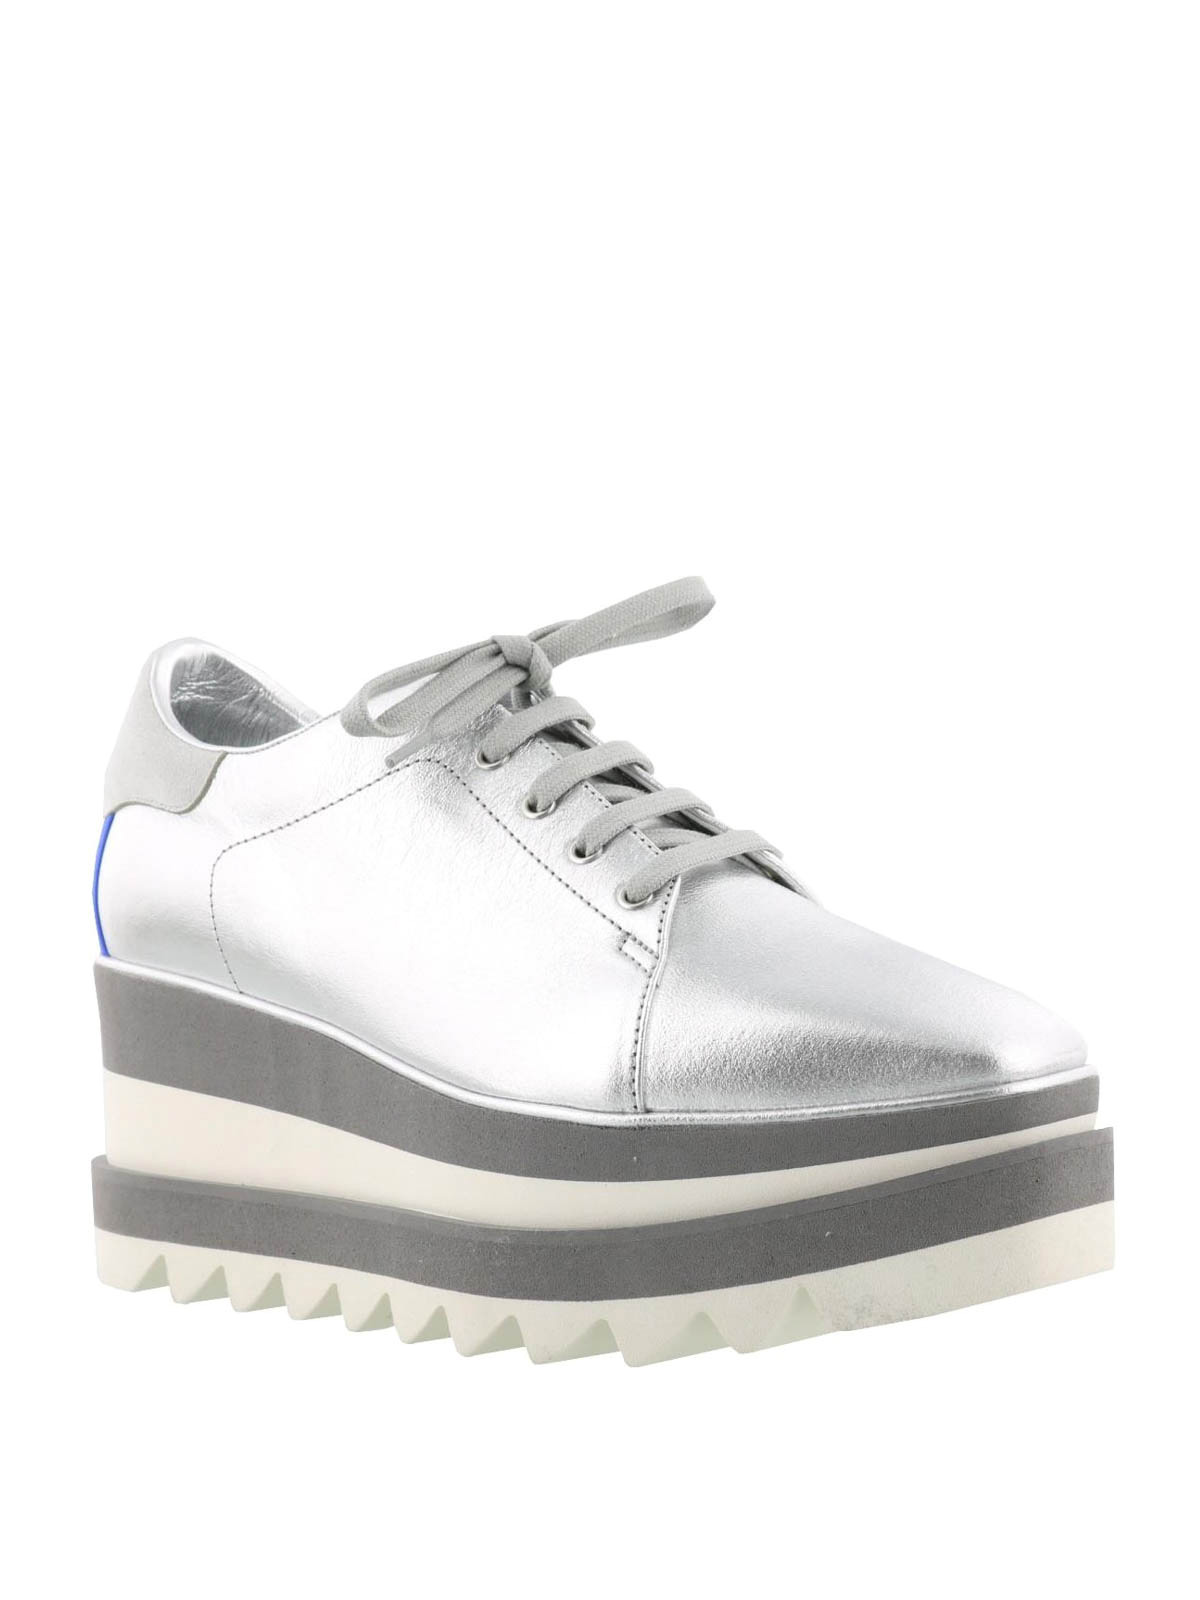 stella mccartney silver sneakers